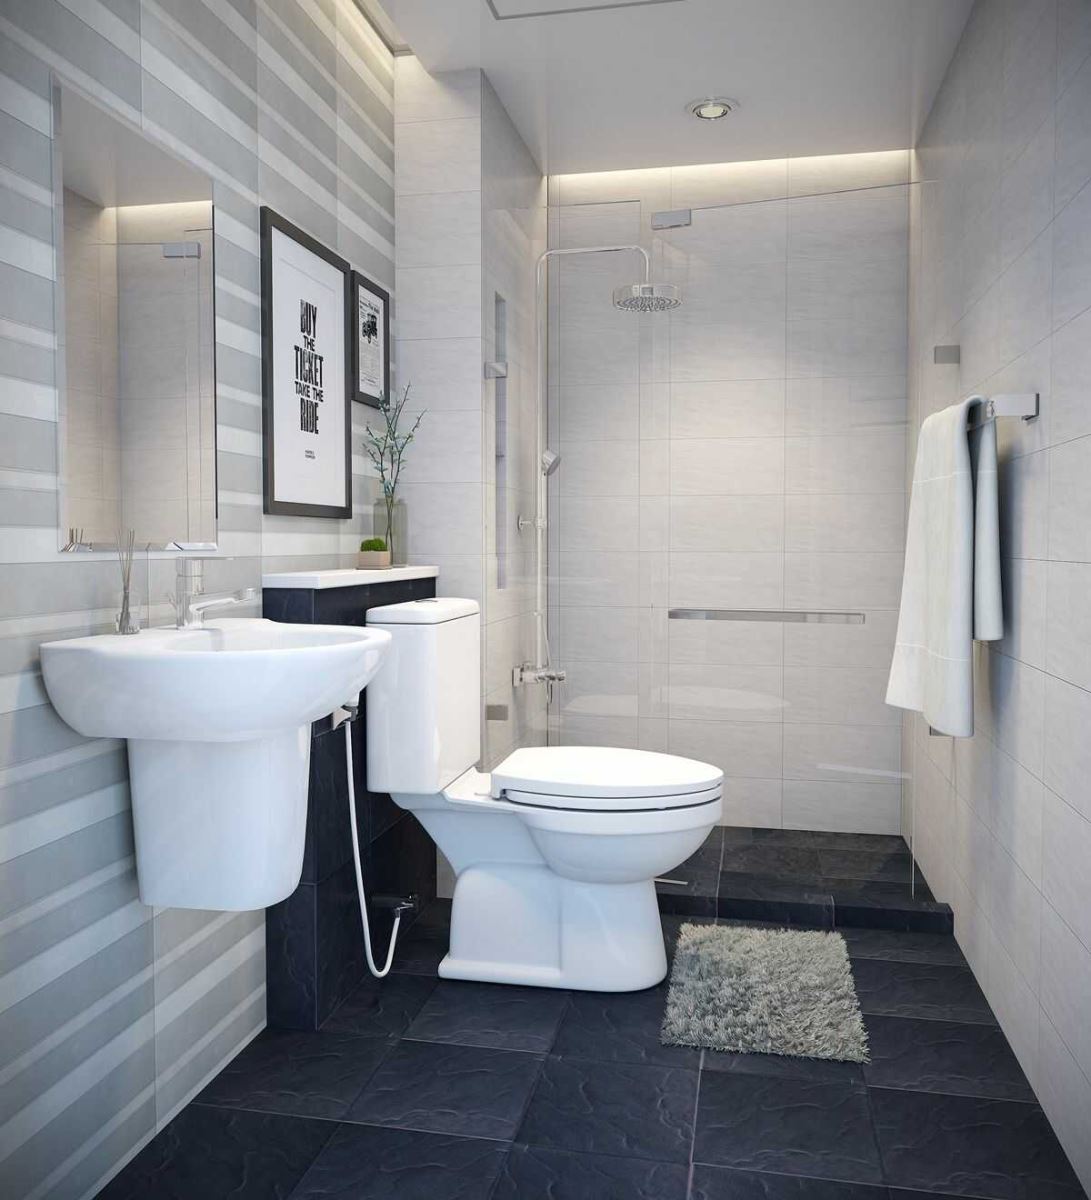 Thiết bị vệ sinh: Các thiết bị vệ sinh tiện nghi sẽ làm cho nhà tắm của bạn trở nên đẹp hơn và sạch sẽ hơn. Với các sản phẩm thiết bị vệ sinh hiện đại và chất lượng, mọi người chắc chắn sẽ muốn xem ngay hình ảnh liên quan đến thiết bị vệ sinh.